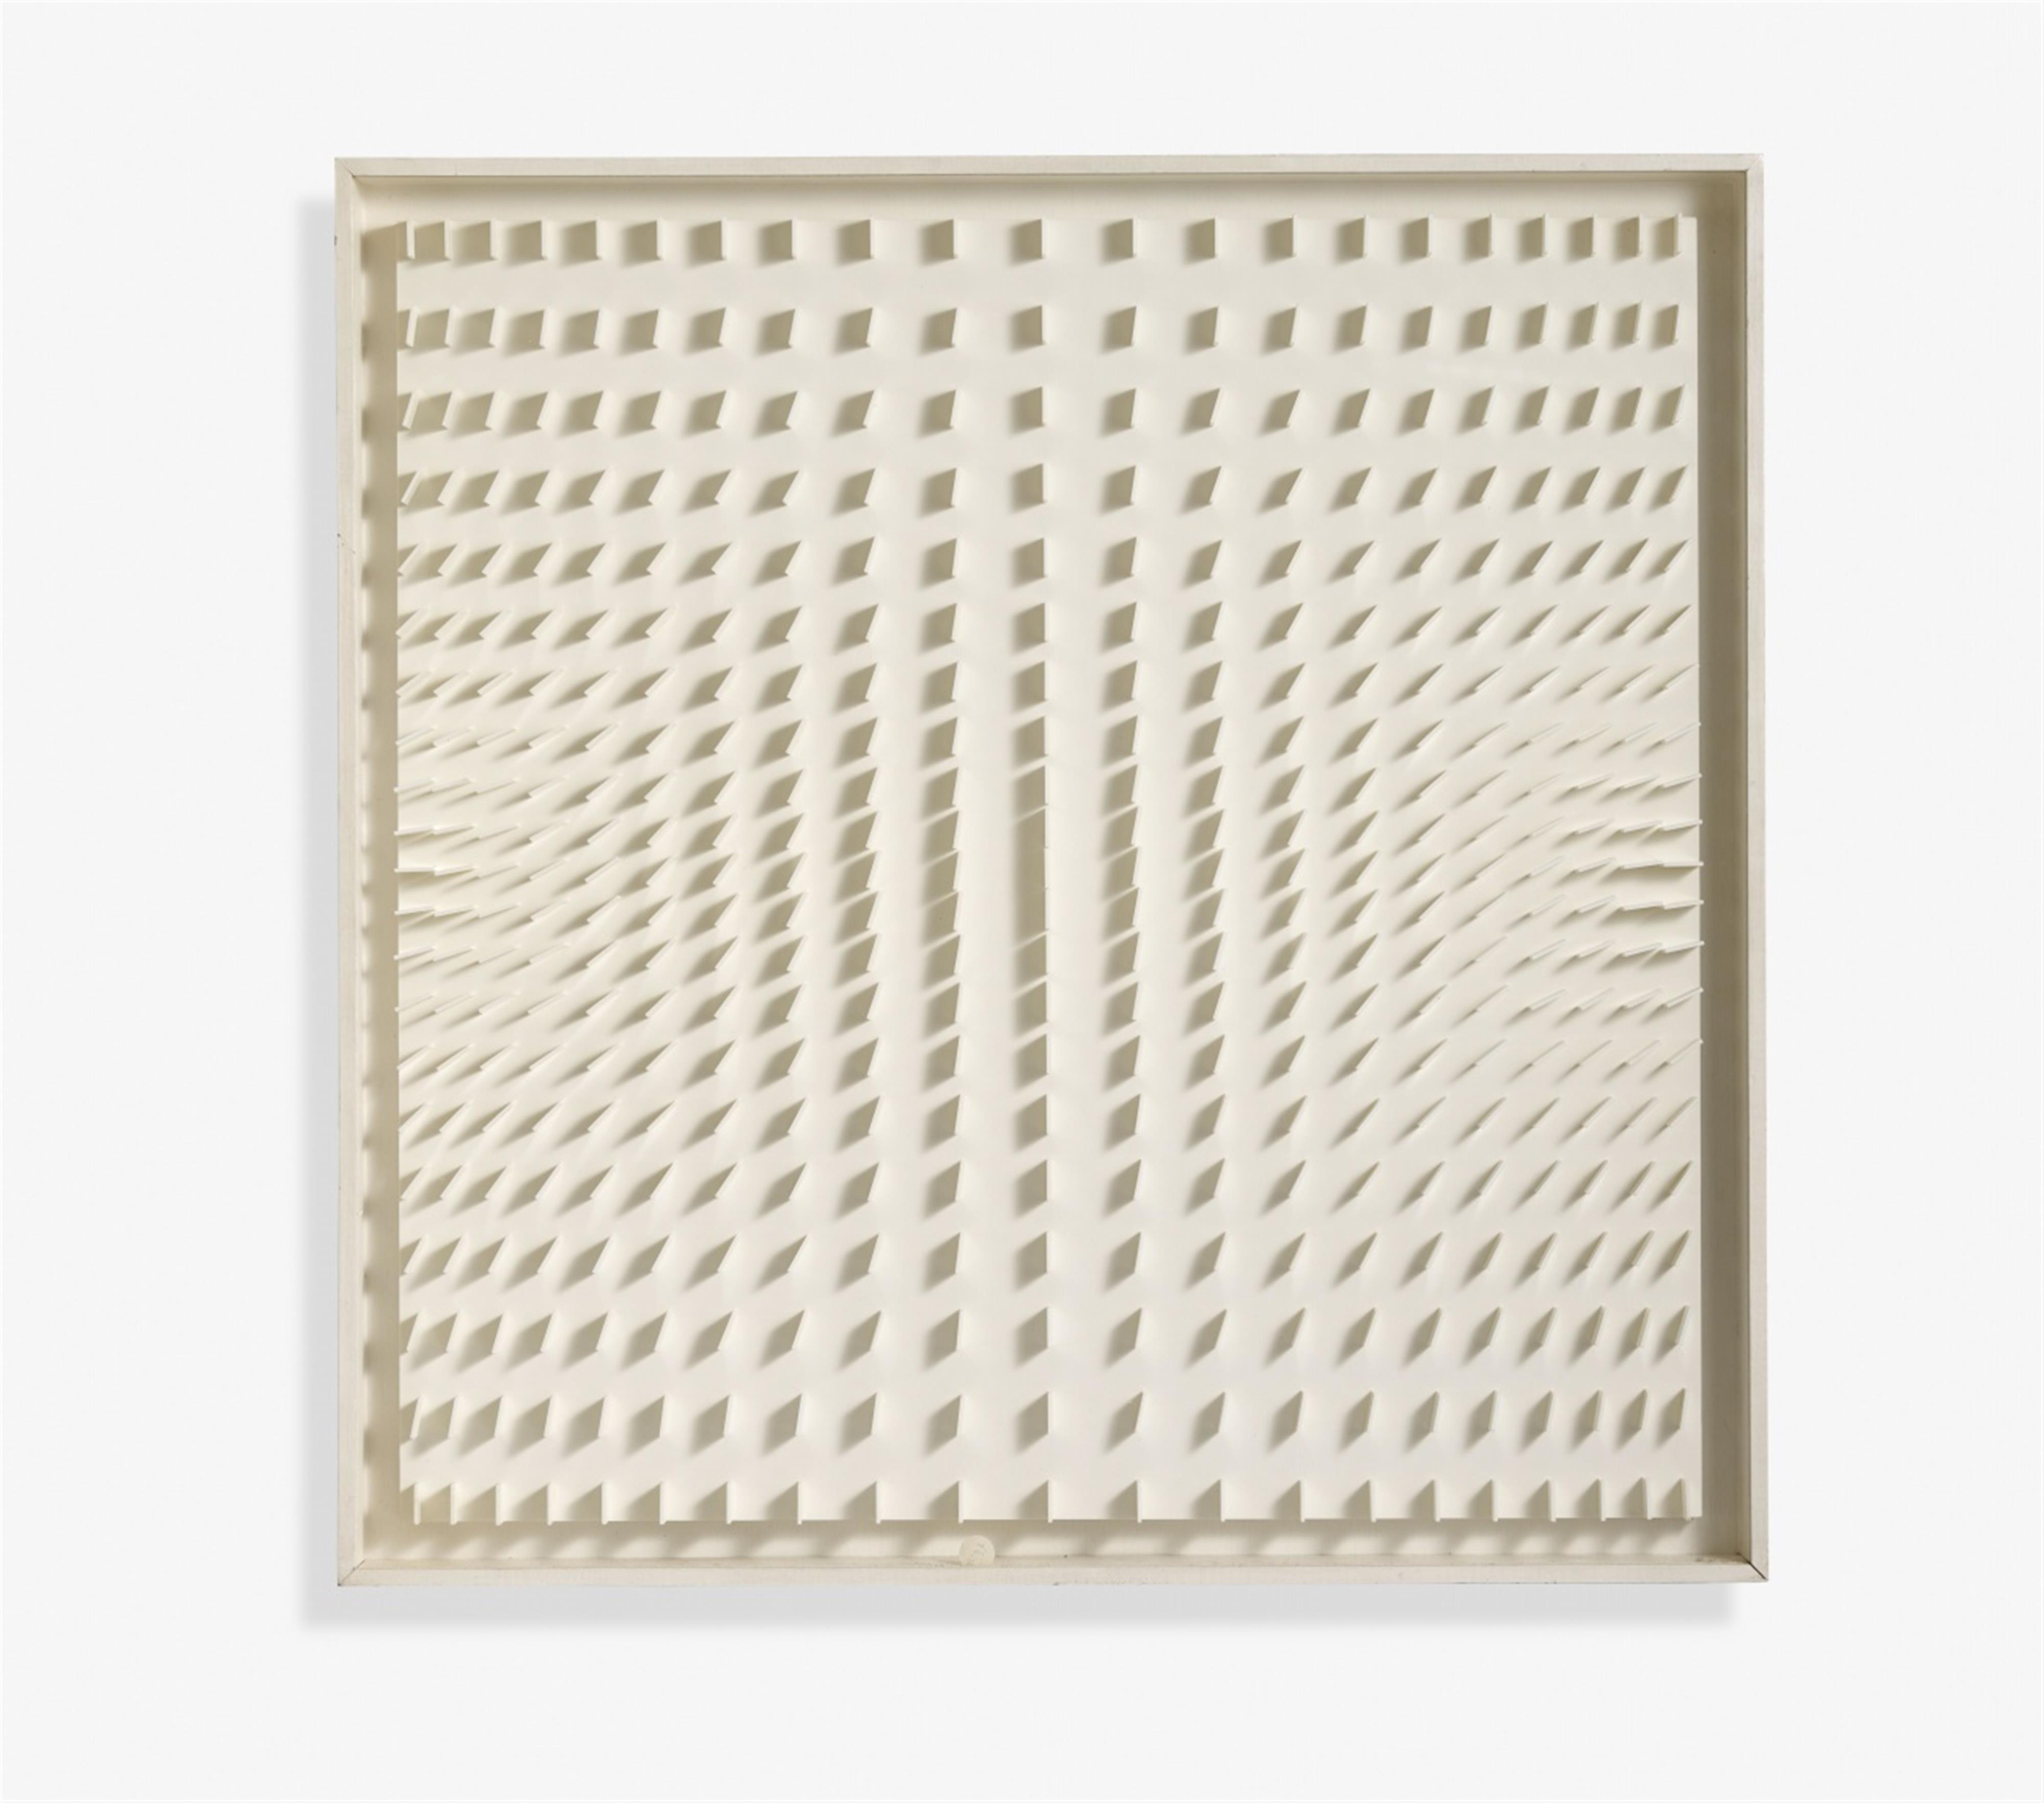 Hartmut Böhm - Quadratrelief 95 (Visuell veränderliche Struktur, 1966) - image-1